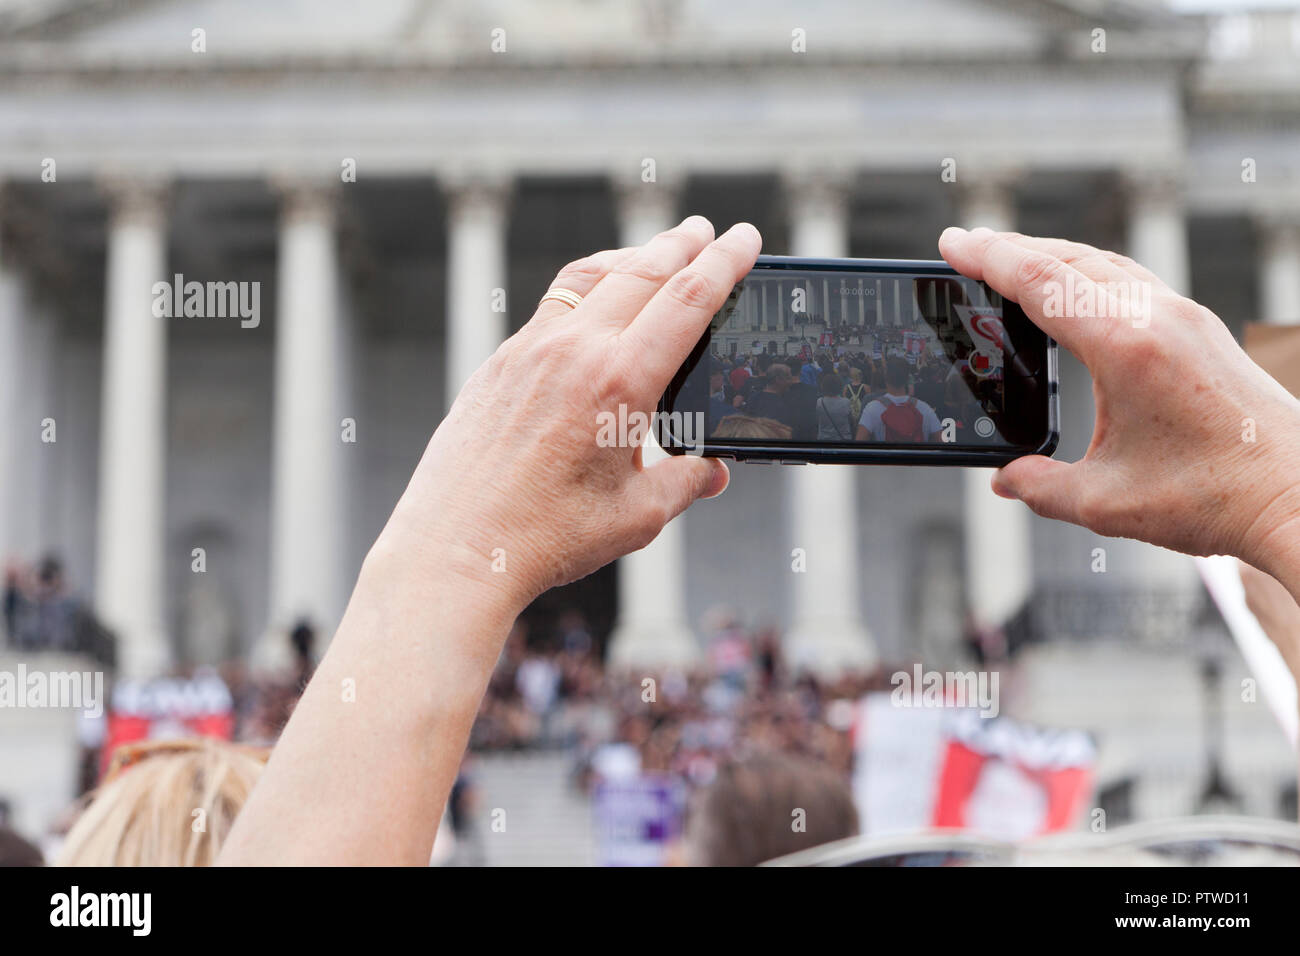 Mujer graba vídeo de protesta política mediante un teléfono móvil (iPhone) - EE.UU. Foto de stock